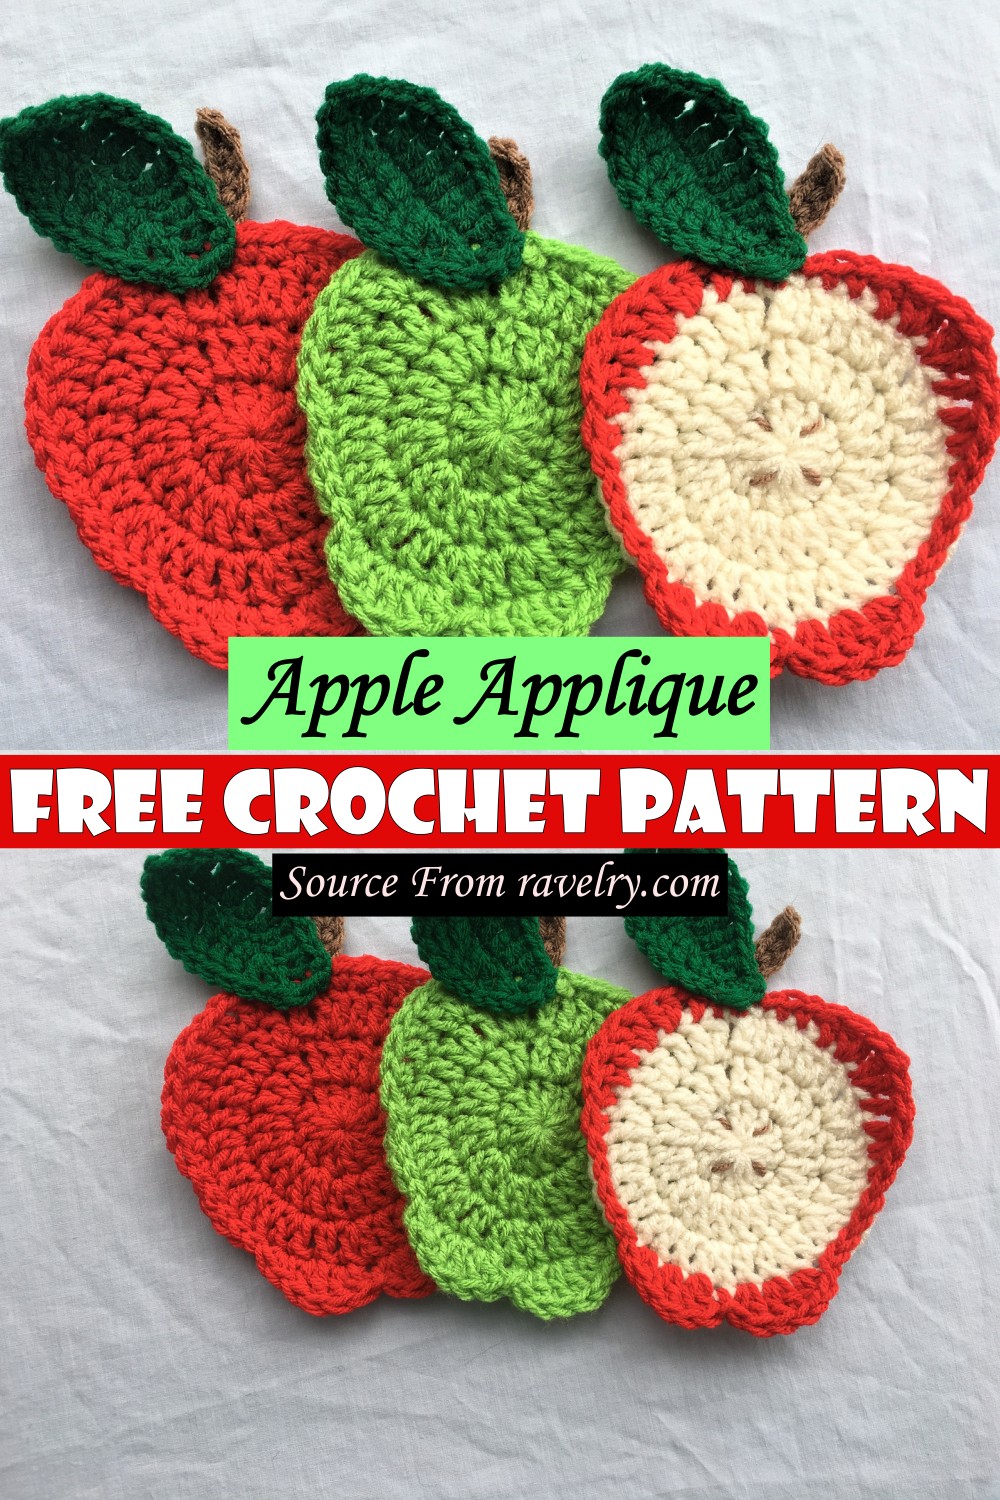 Free Crochet Apple Applique Pattern